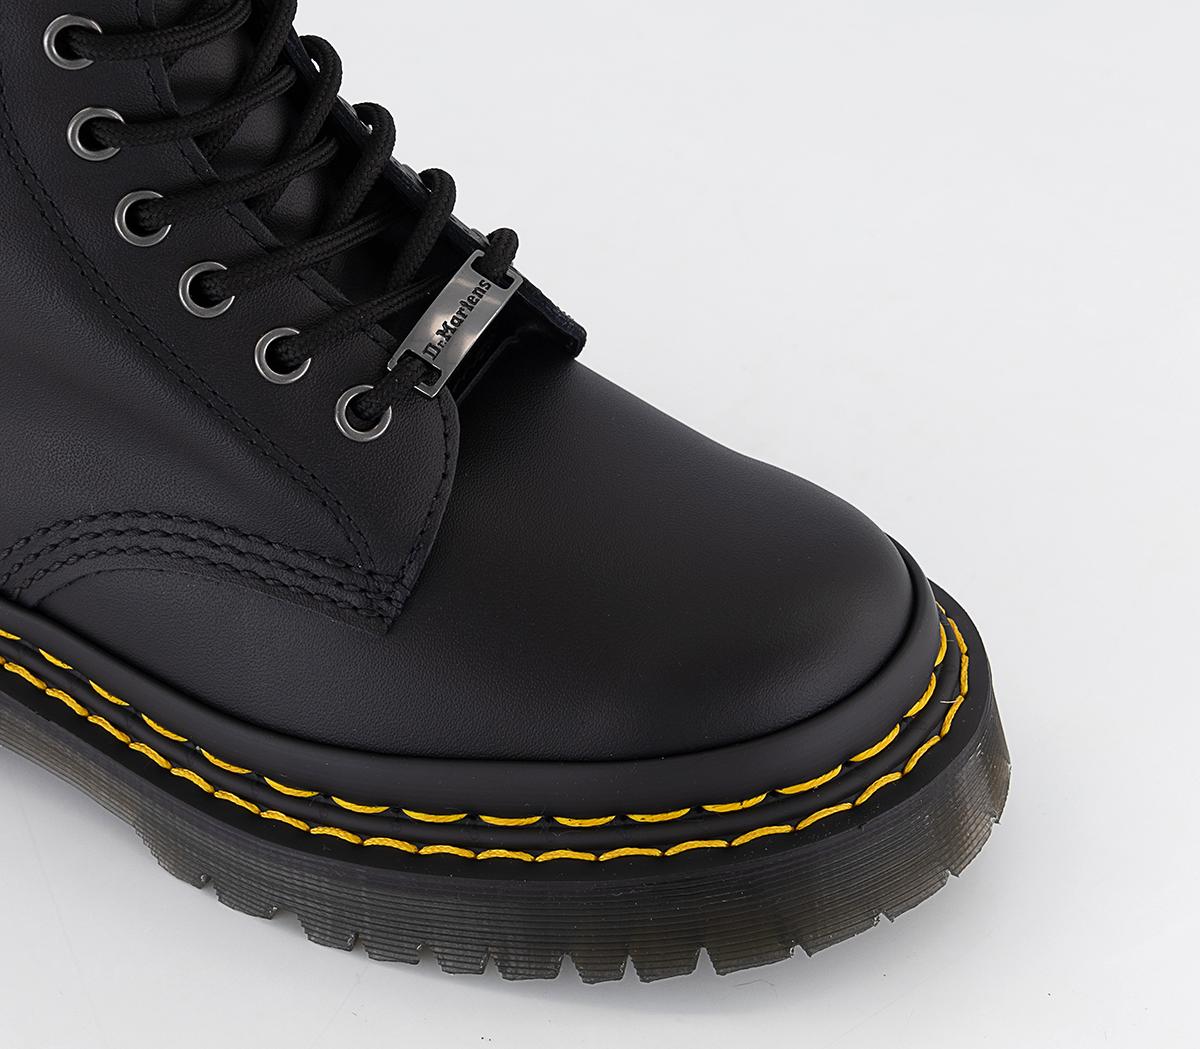 Dr. Martens 1460 Bex Ds Pltd Boots Black Backhand - Women's Ankle Boots